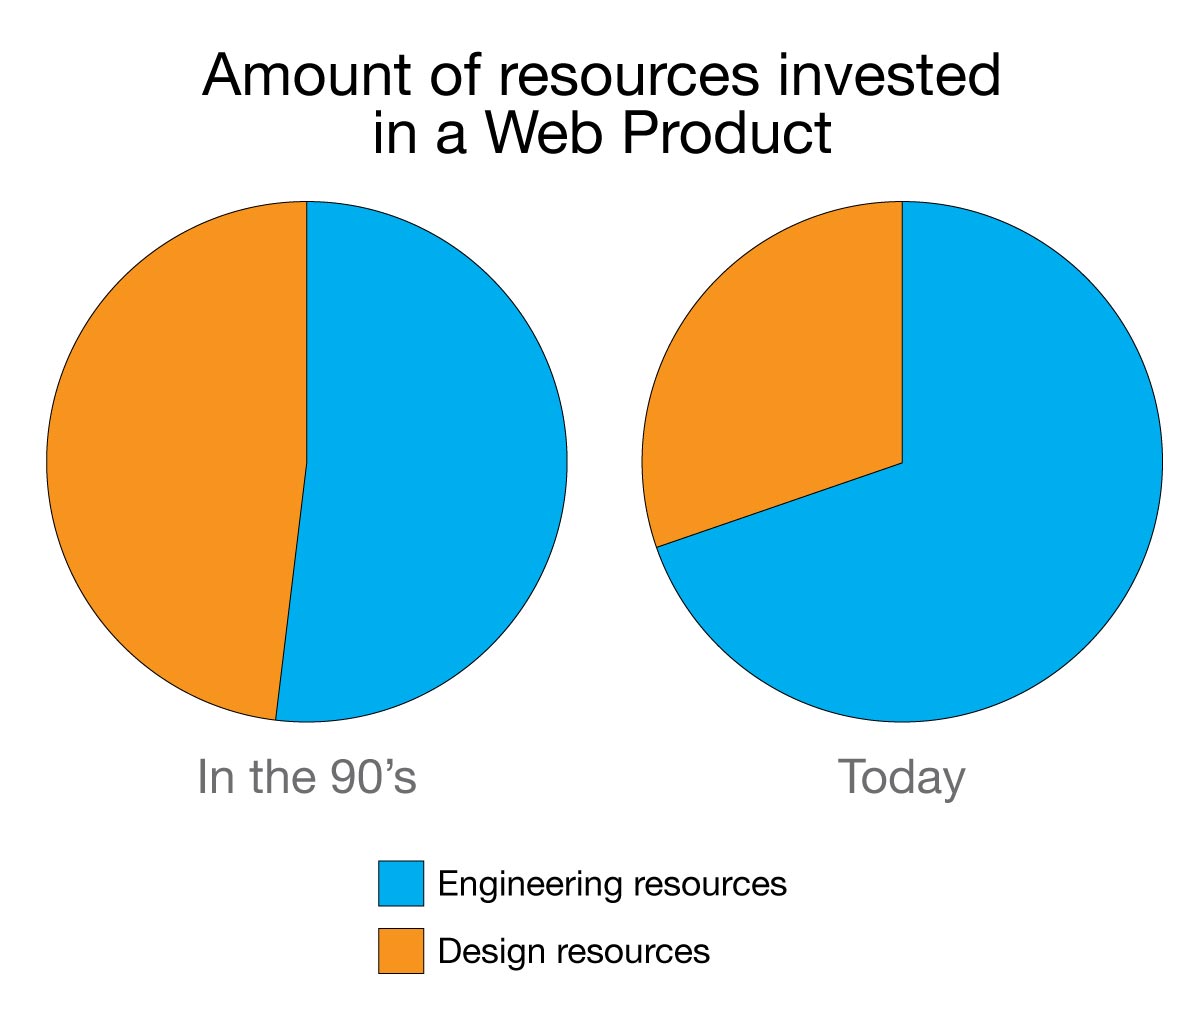 Aplicações web atuais necessitam de mais recursos de desenvolvimento do que recursos de design.